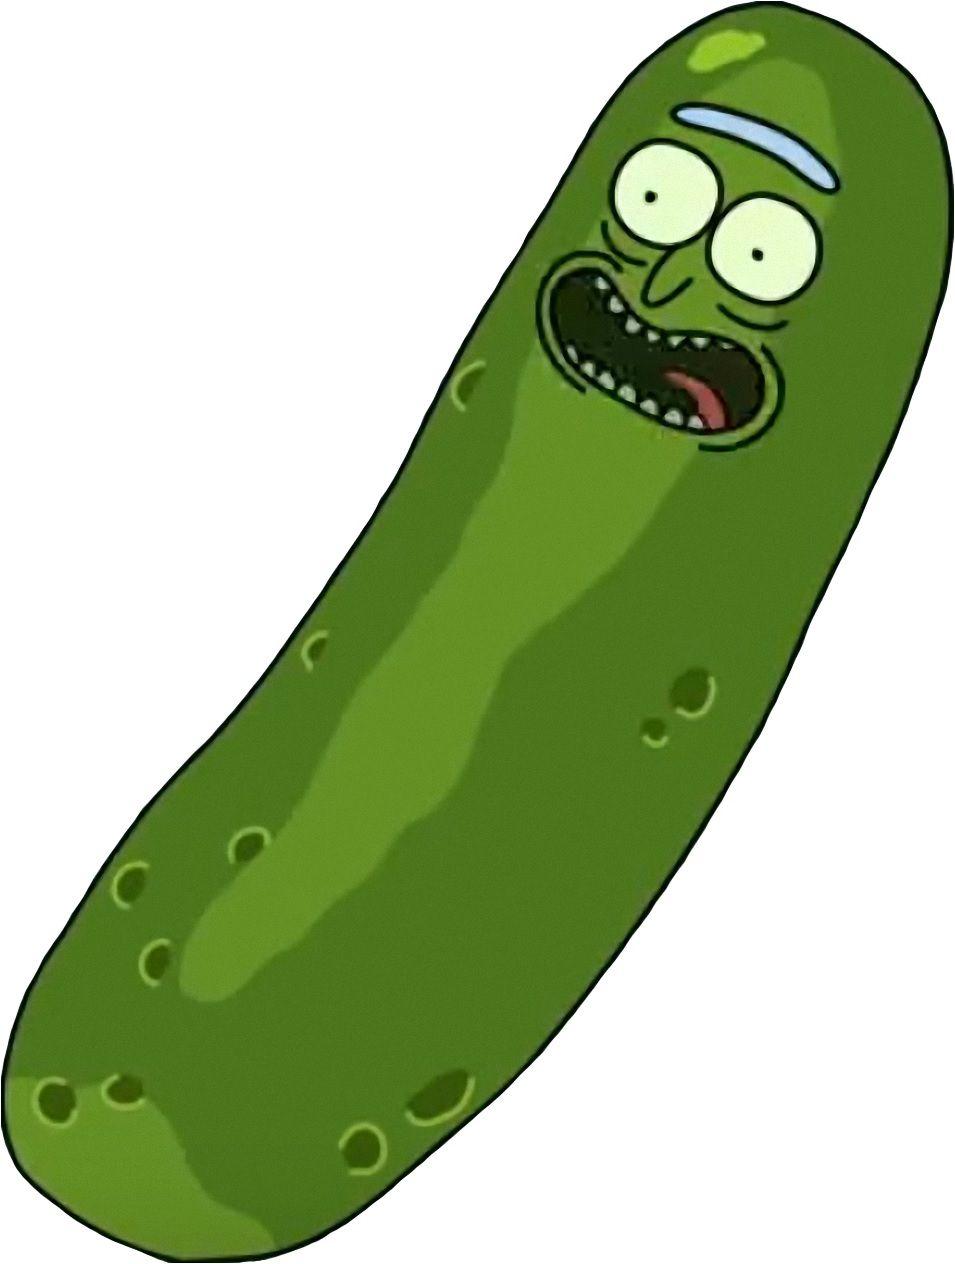 I'm Pickle Rick!